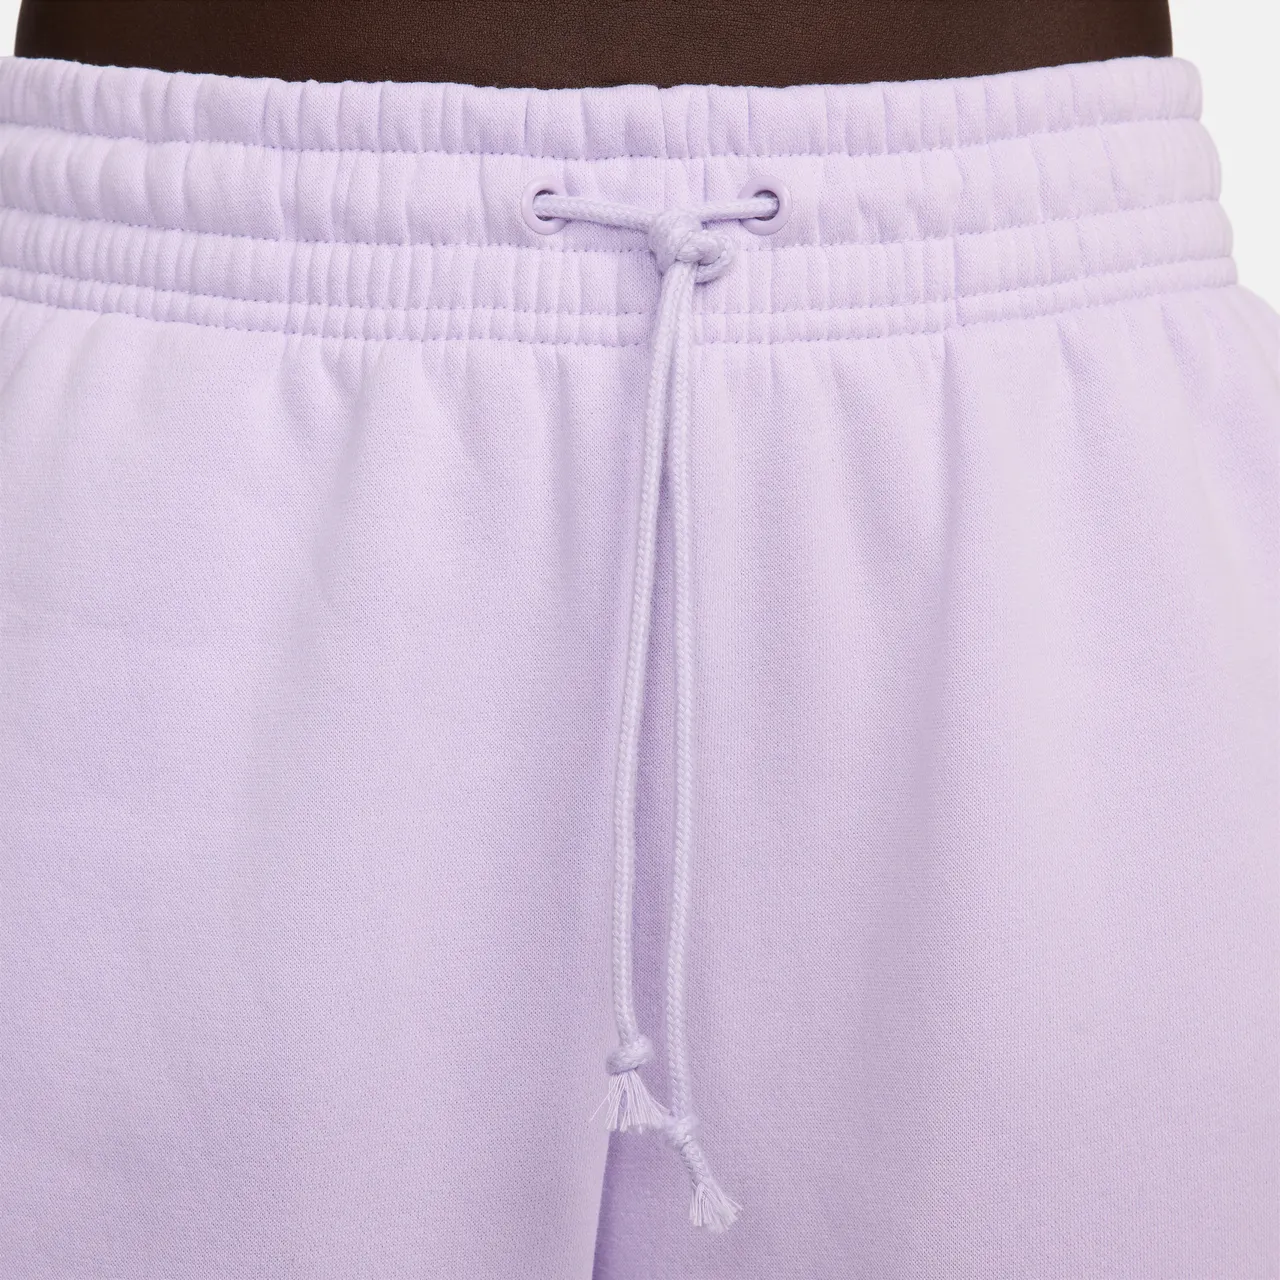 Nike Sportswear Phoenix Fleece Oversized joggingbroek met hoge taille voor dames - Paars